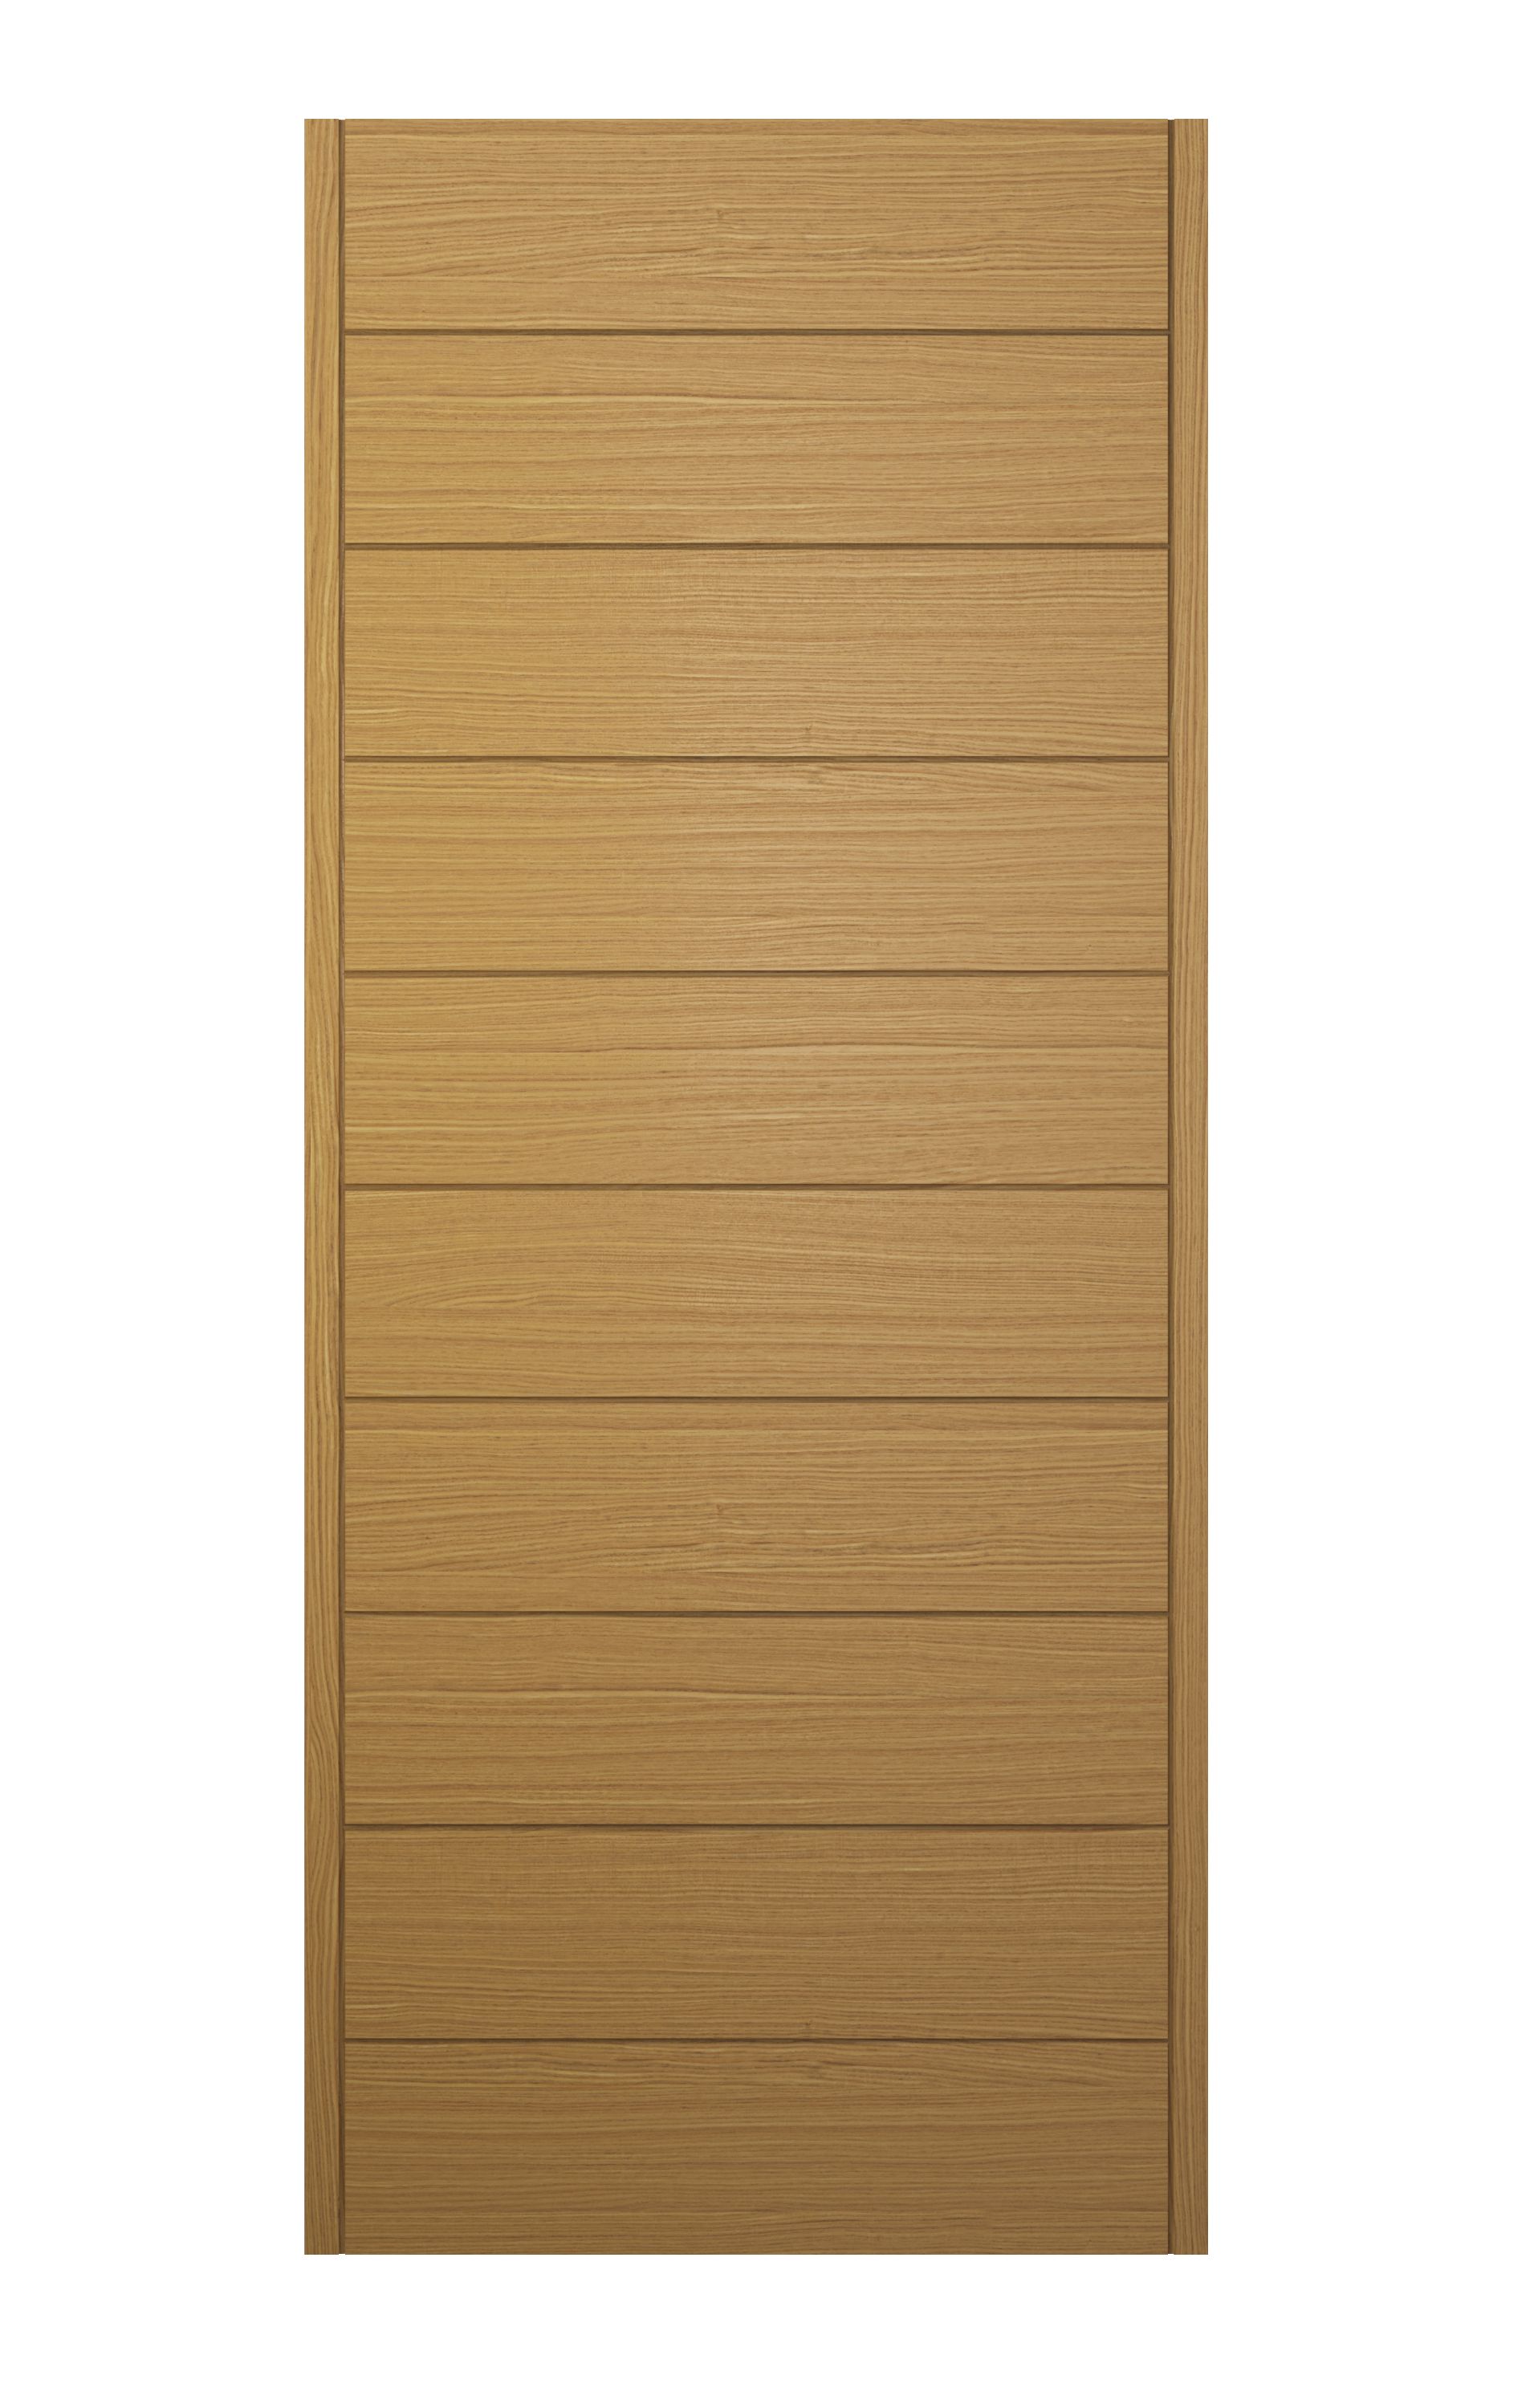 Image of JCI Ultimate Oslo Oak External Hardwood Door with Handle - 2032 x 813mm